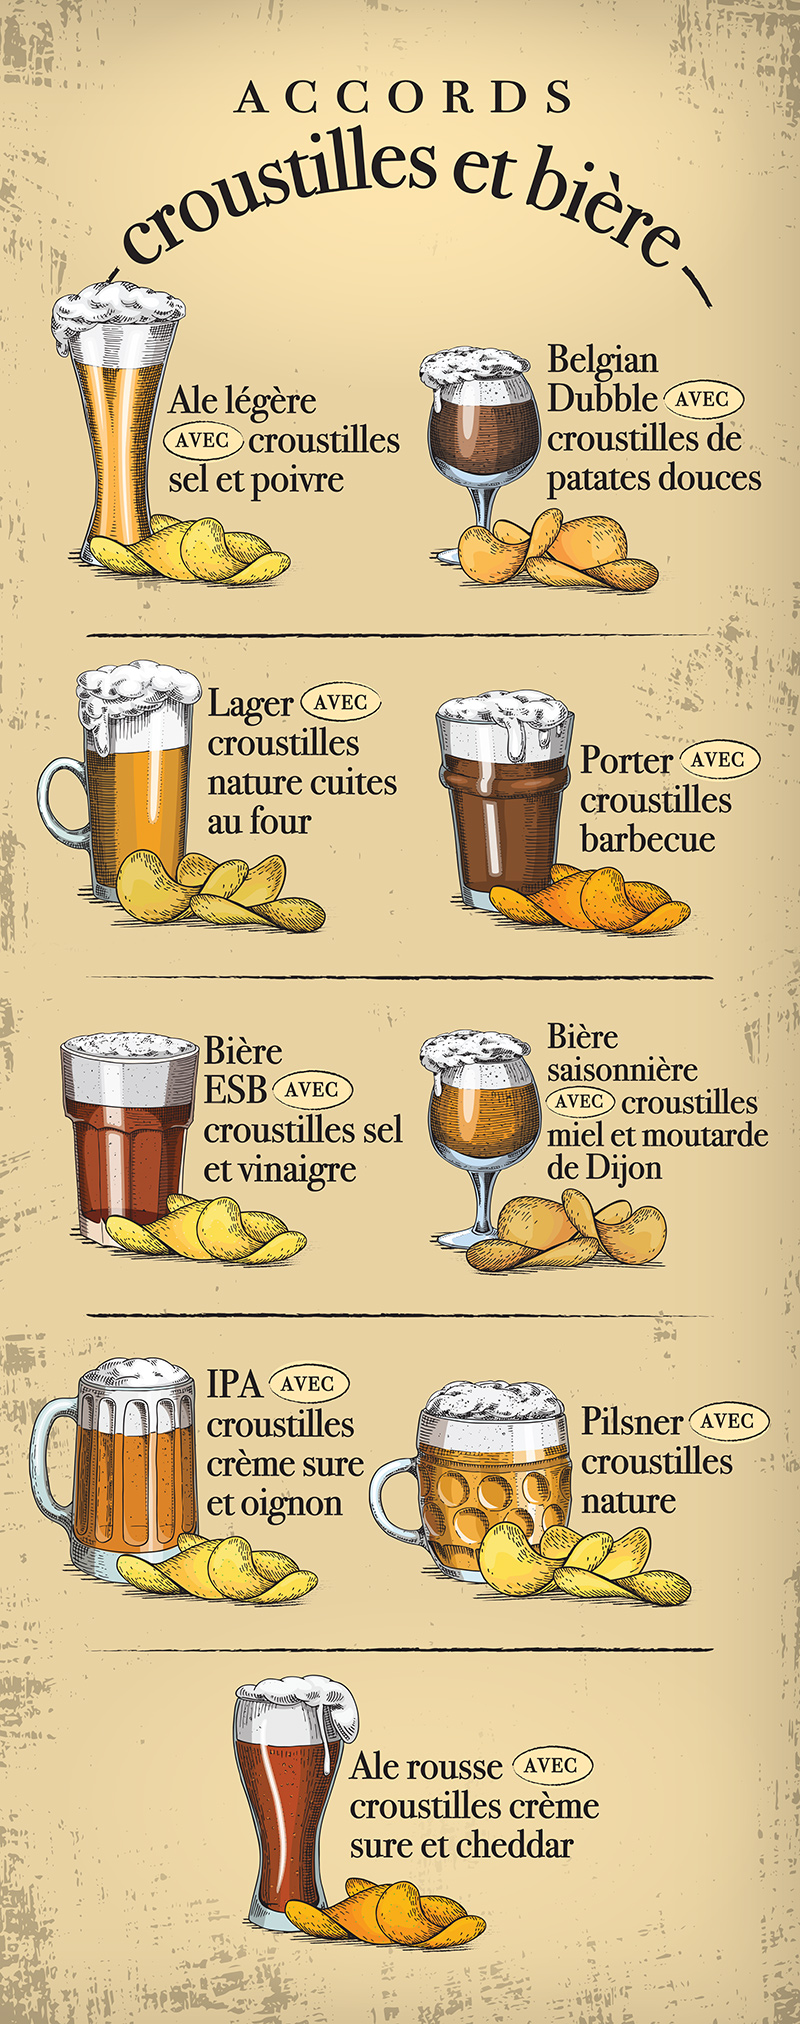 BeerAndChips-Infographic-FR